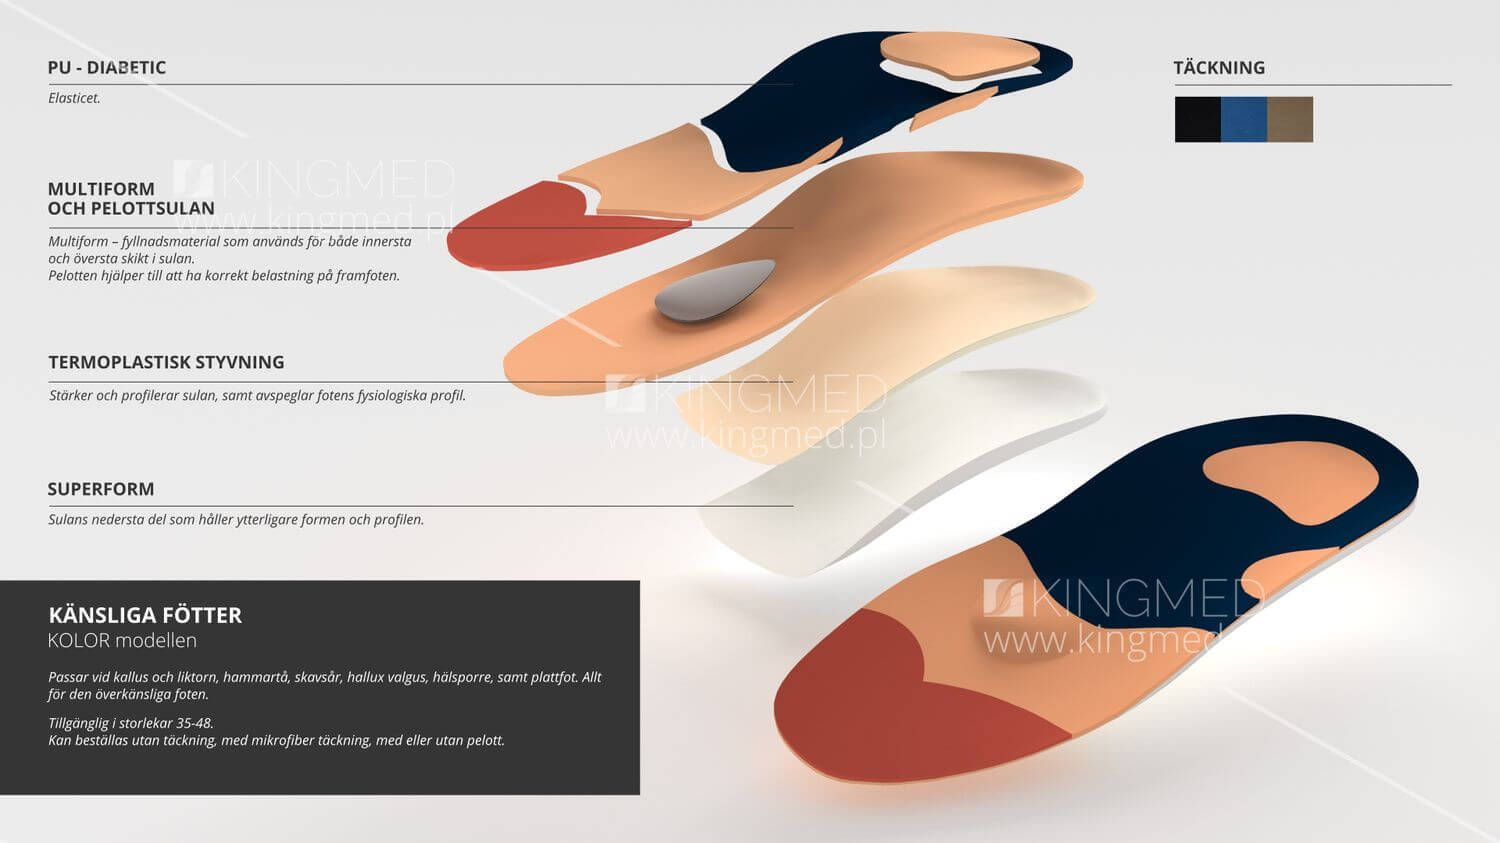 Ortopediska inlägg känsliga fötter kolor modellen